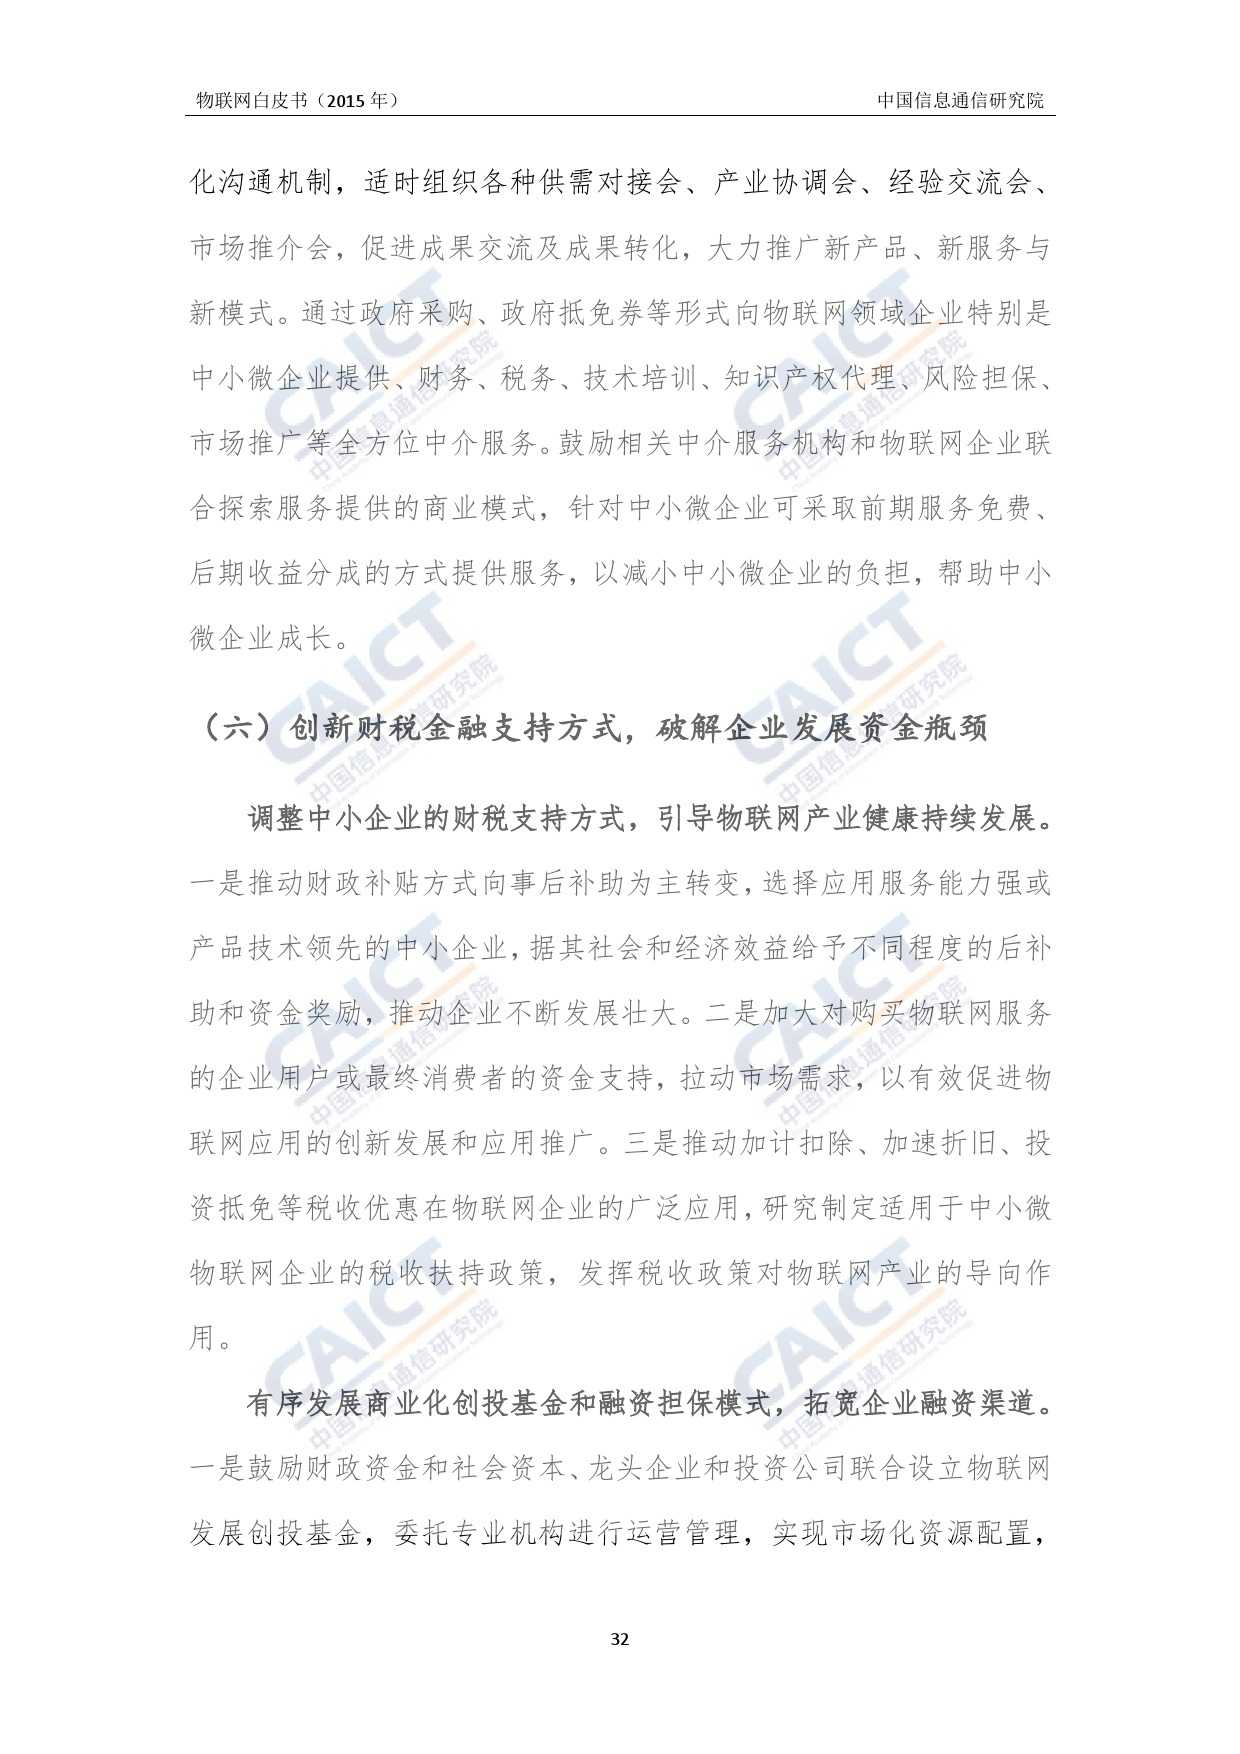 中国信息通信研究院：2015年物联网白皮书_000036